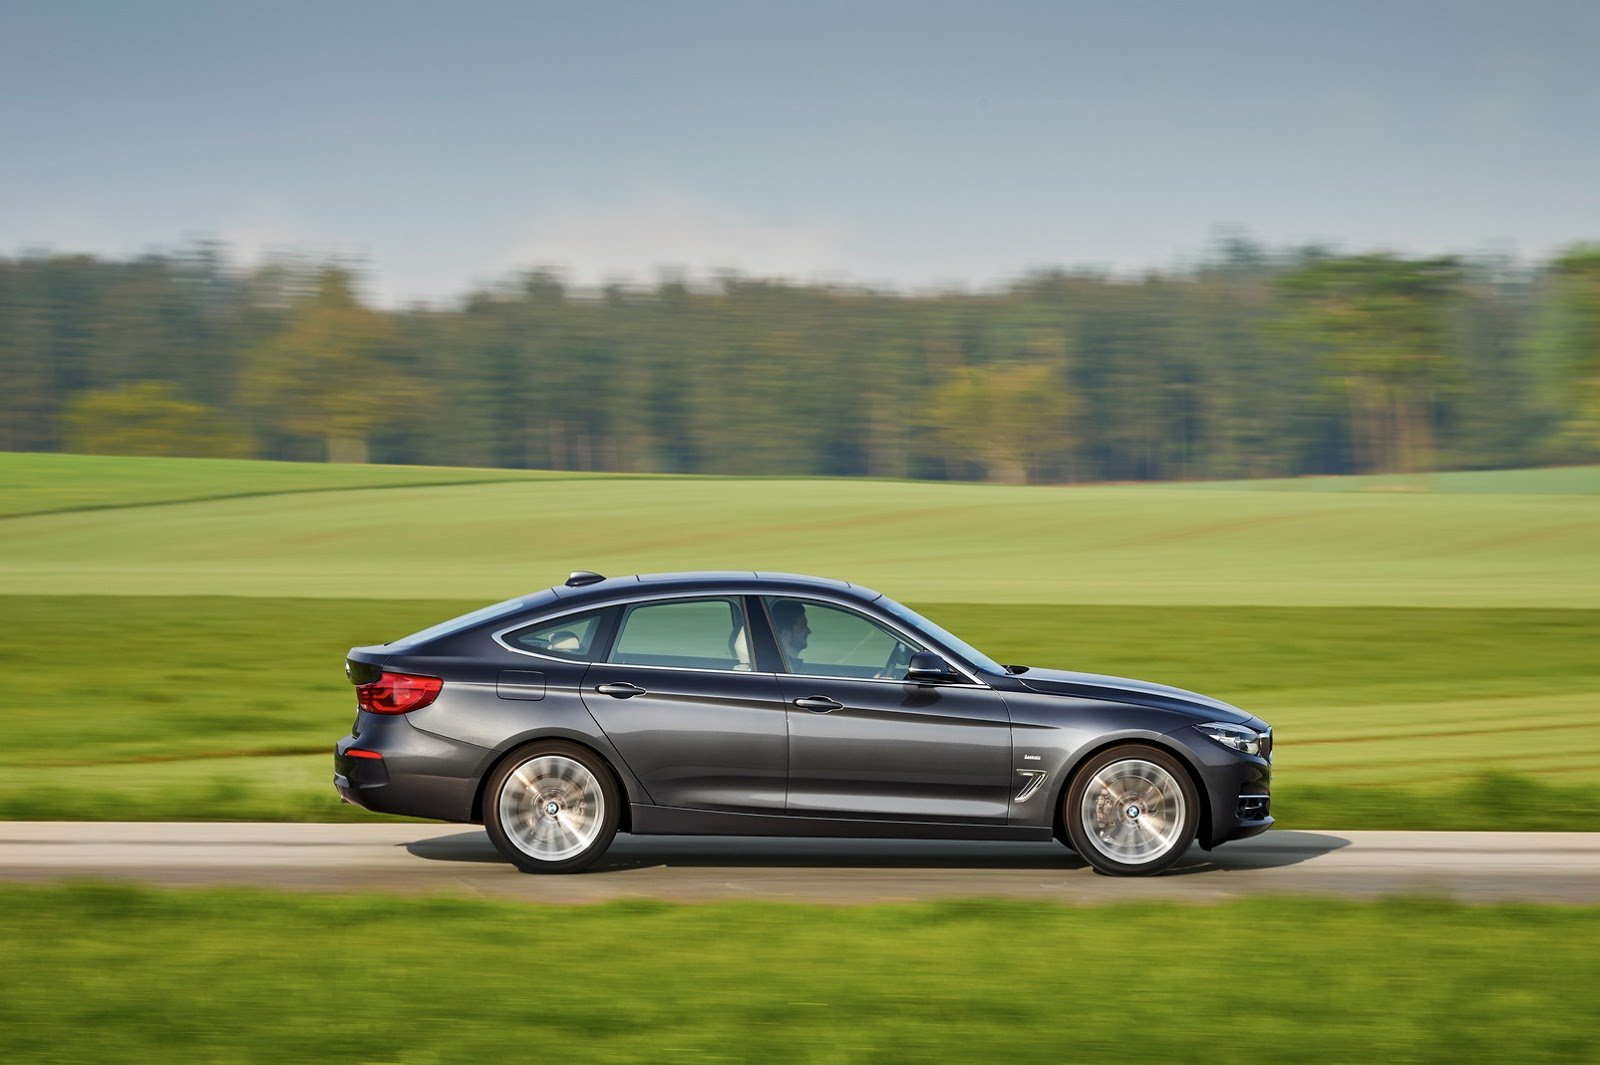 BMW řady 3 Gran Turismo má po faceliftu nové motory, design zůstal skoro stejný.